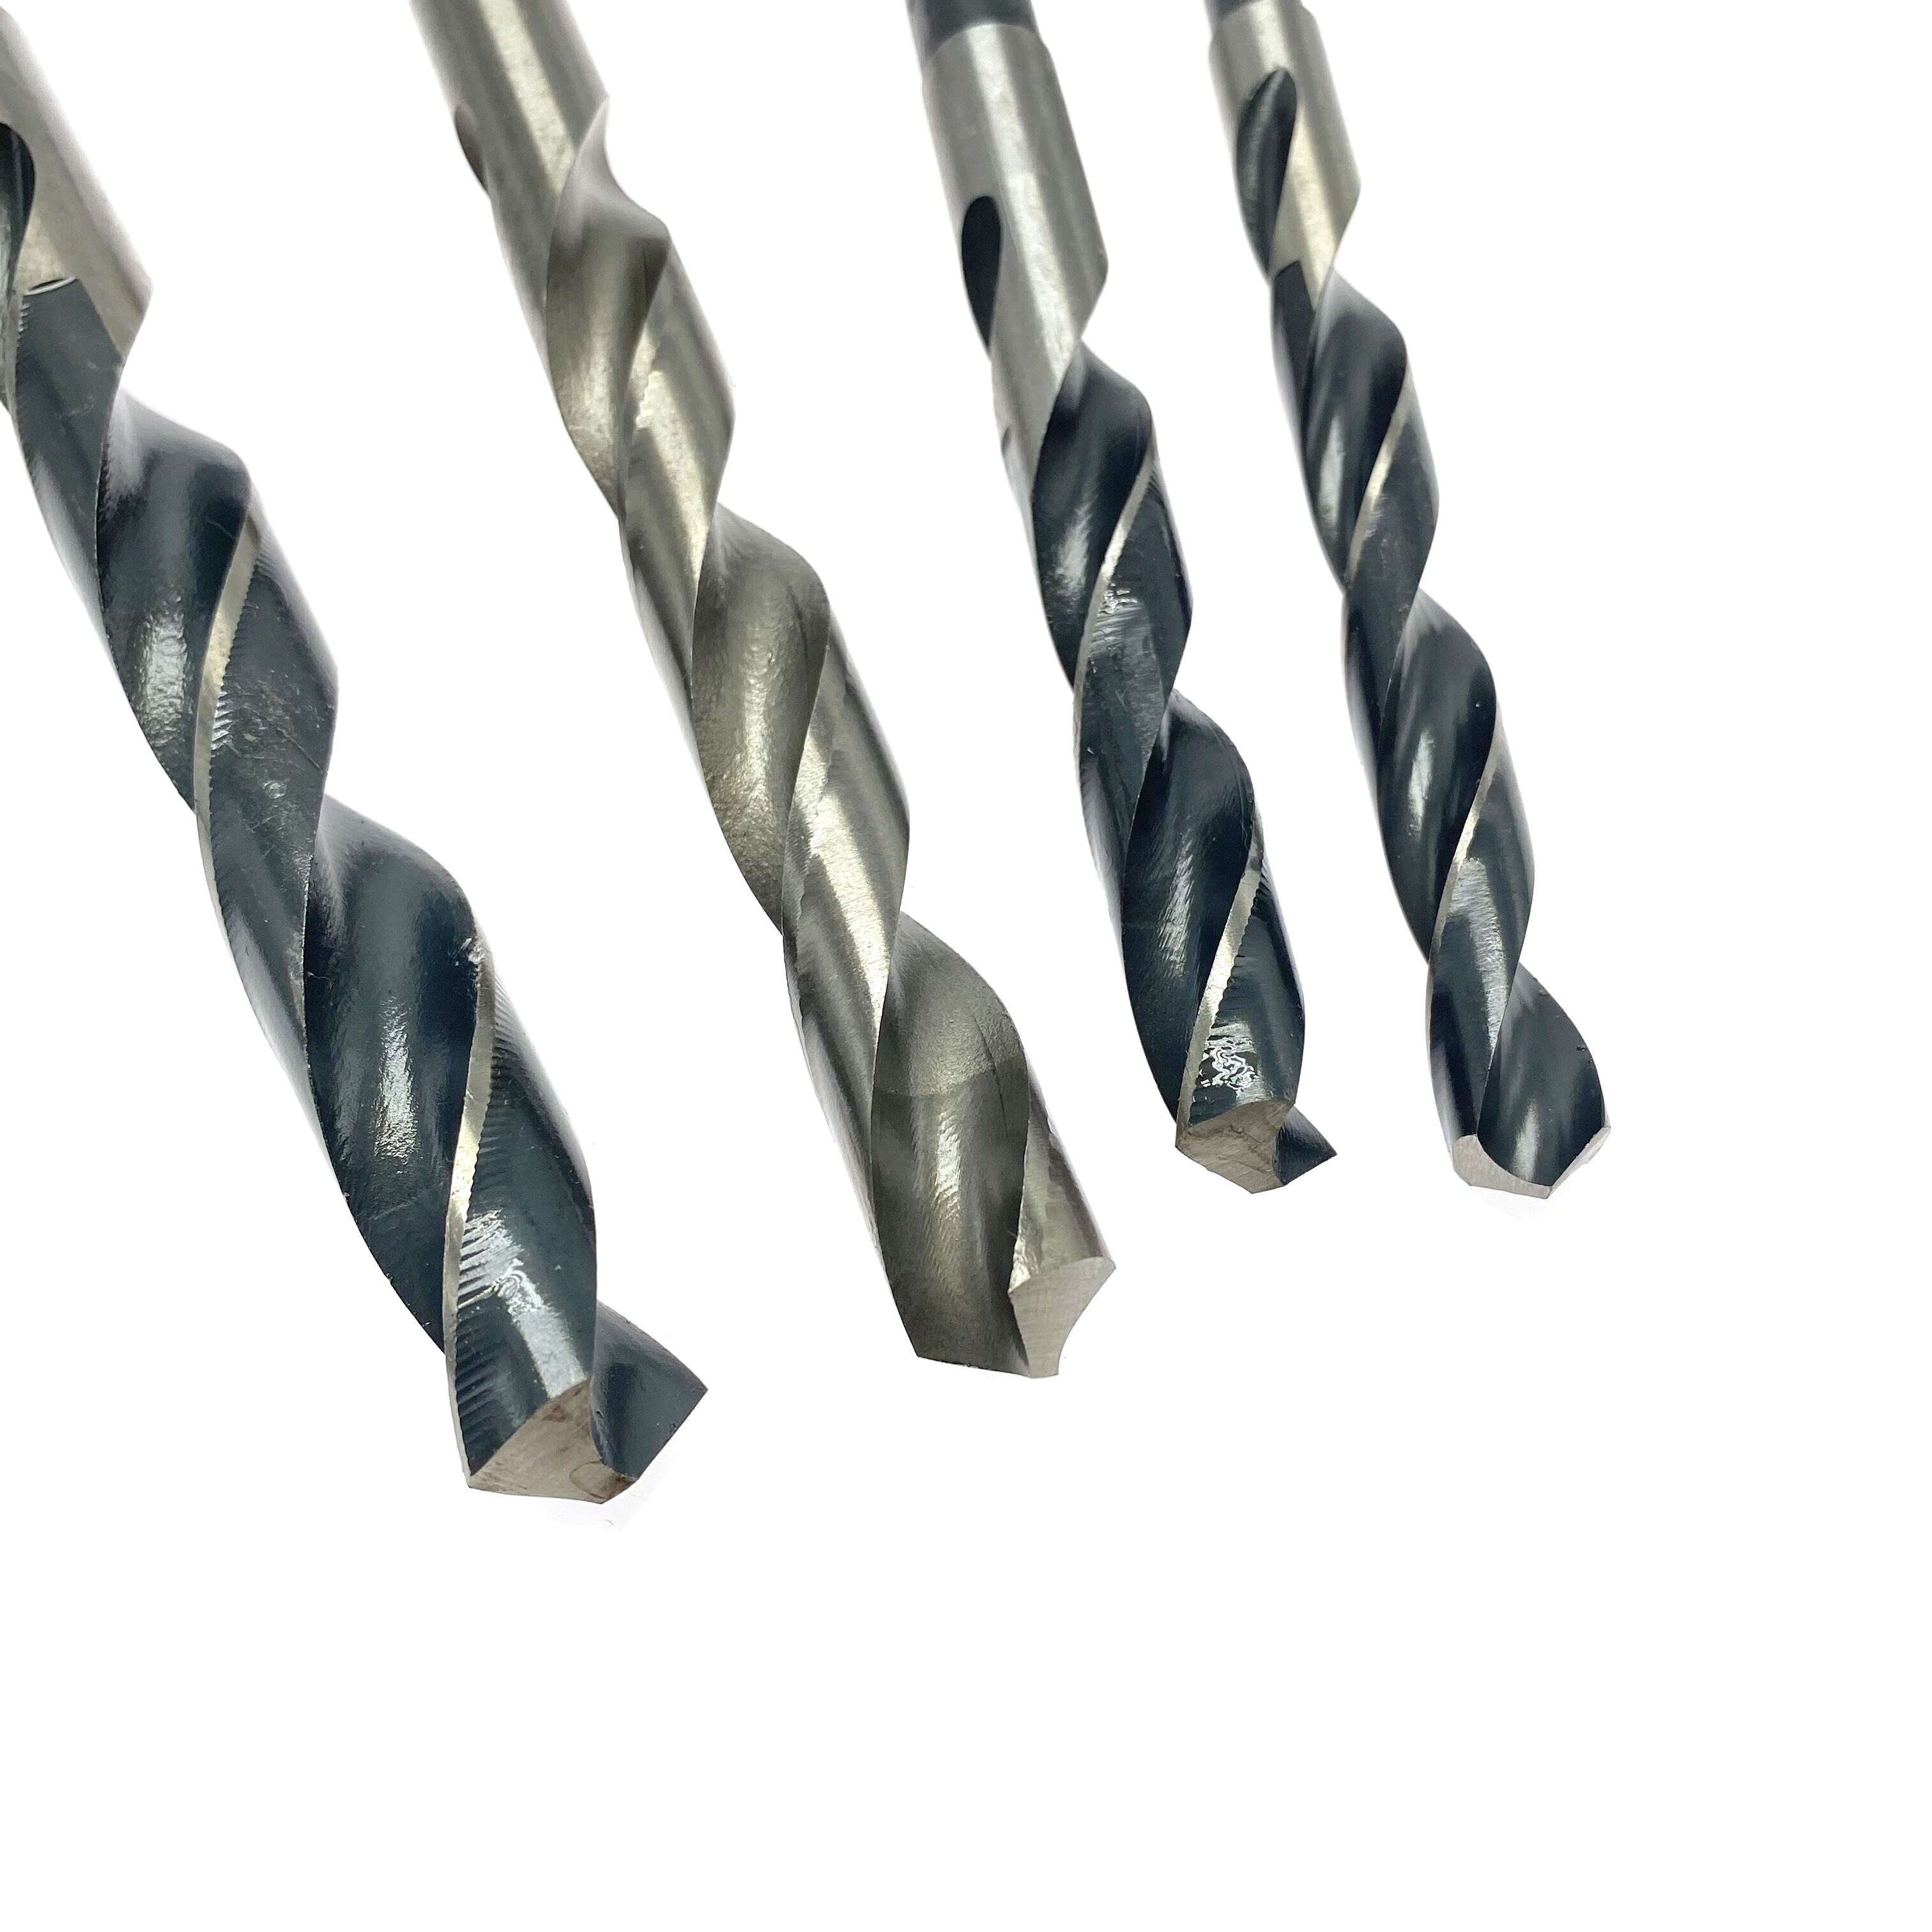 Metal delme için yüksek kaliteli 4241 HSS azaltılmış şaftlı büküm matkap ucu 14 mm